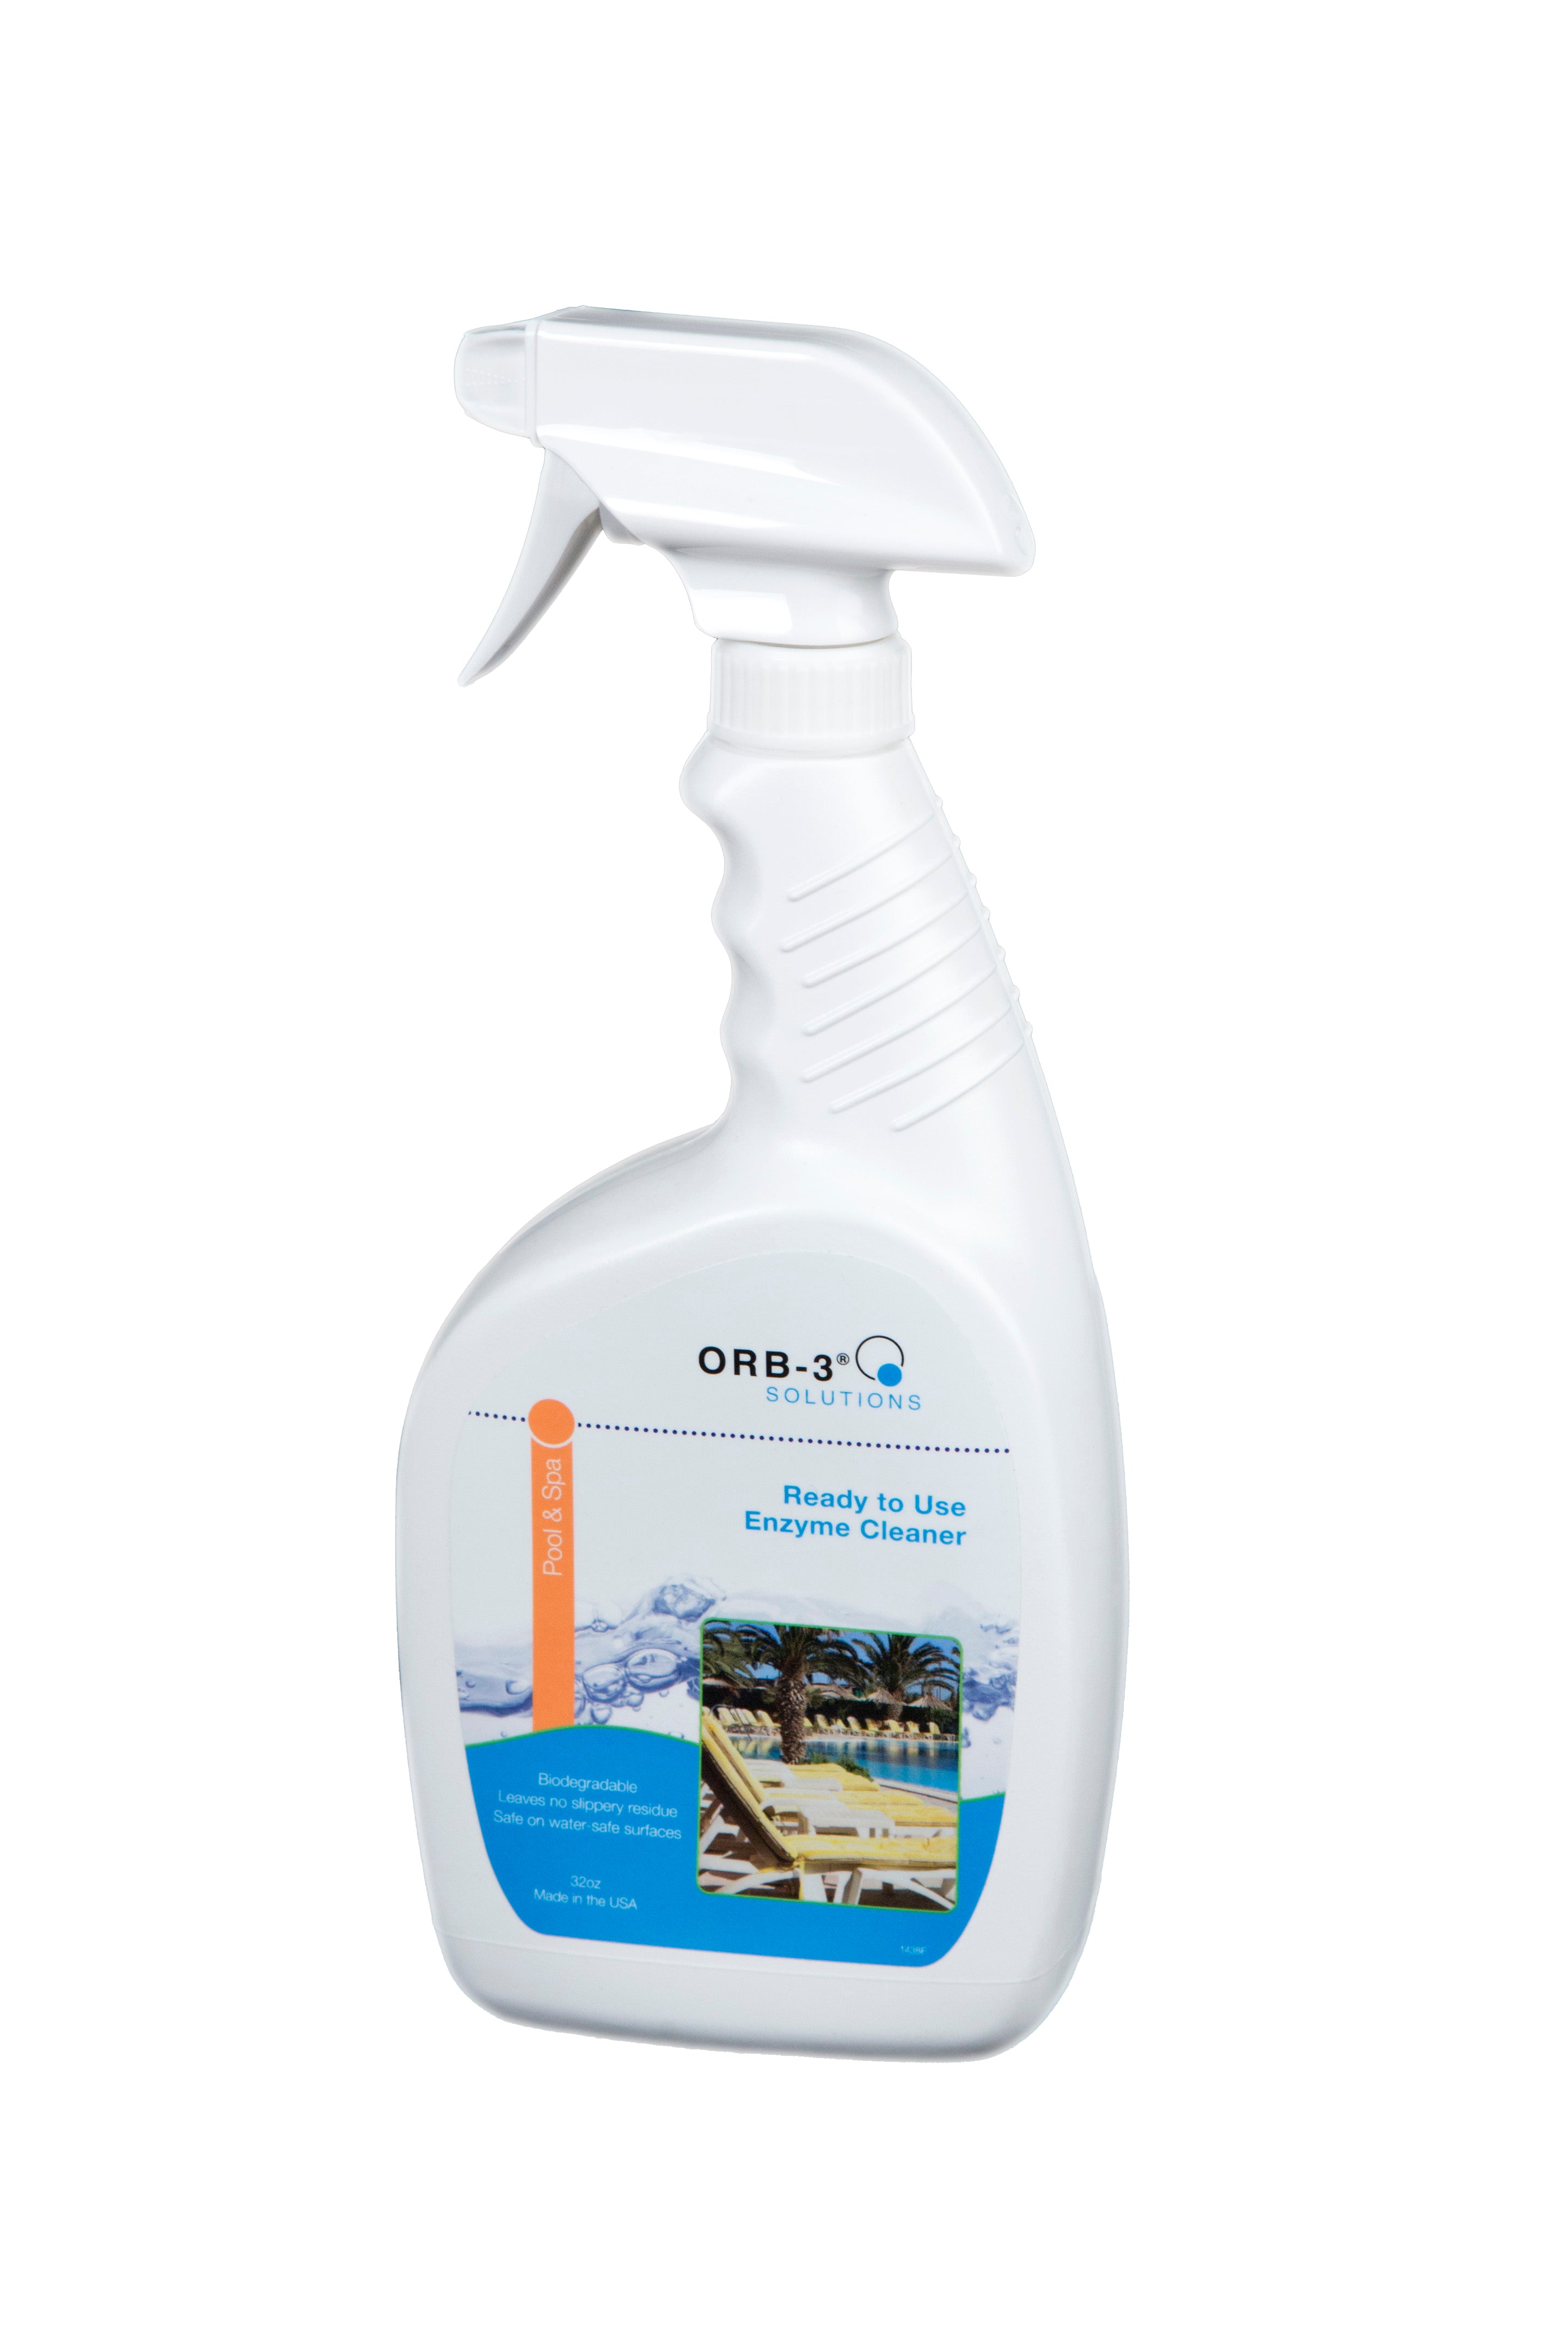 Orb-3 Pool & Spa Enzyme Cleaner